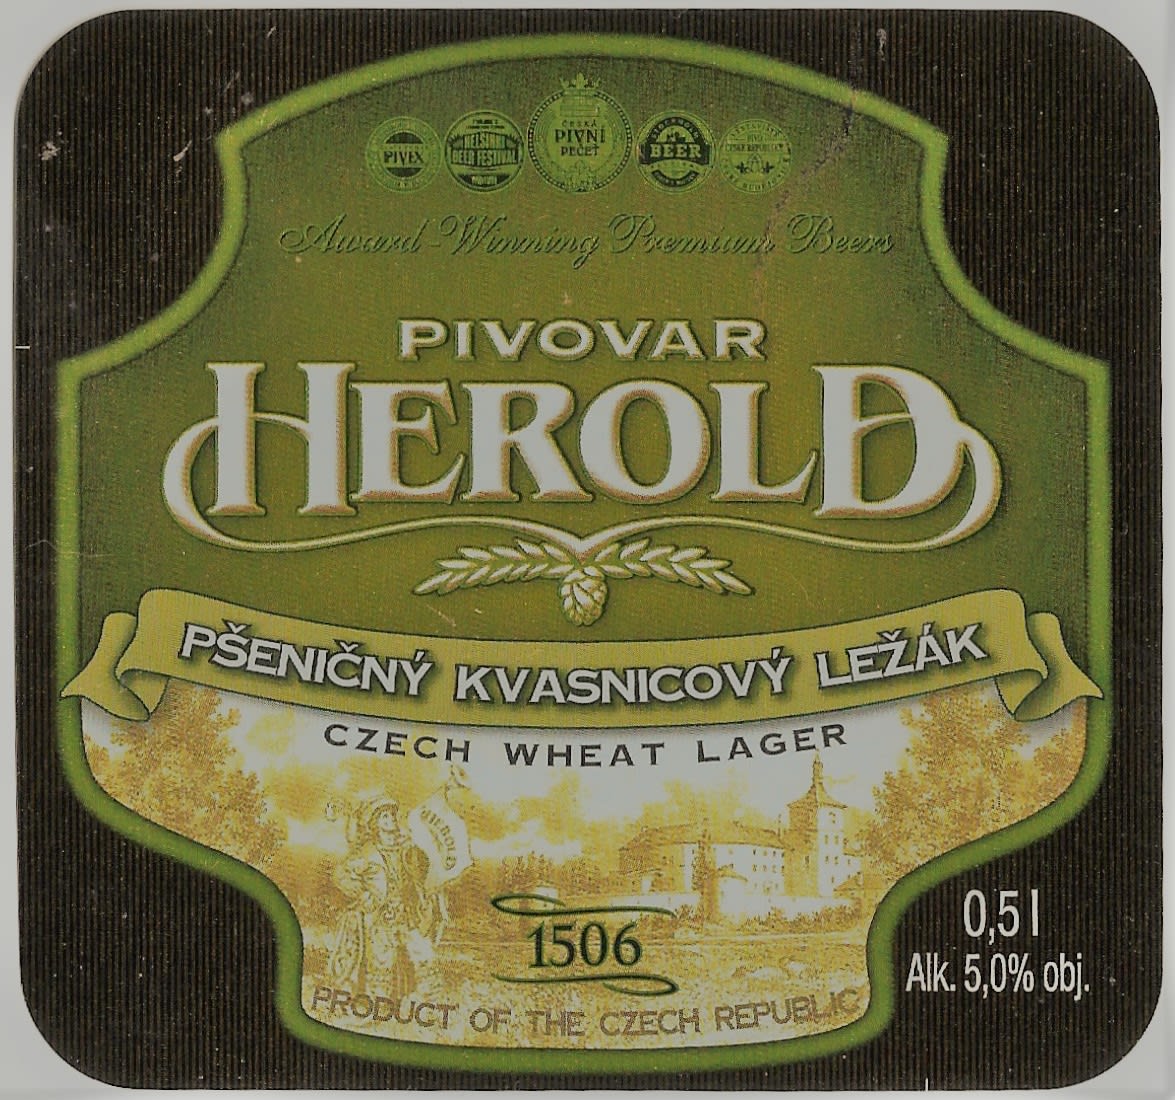 Herold Pšeničný kvasnicový ležák 0,5 Etk. A